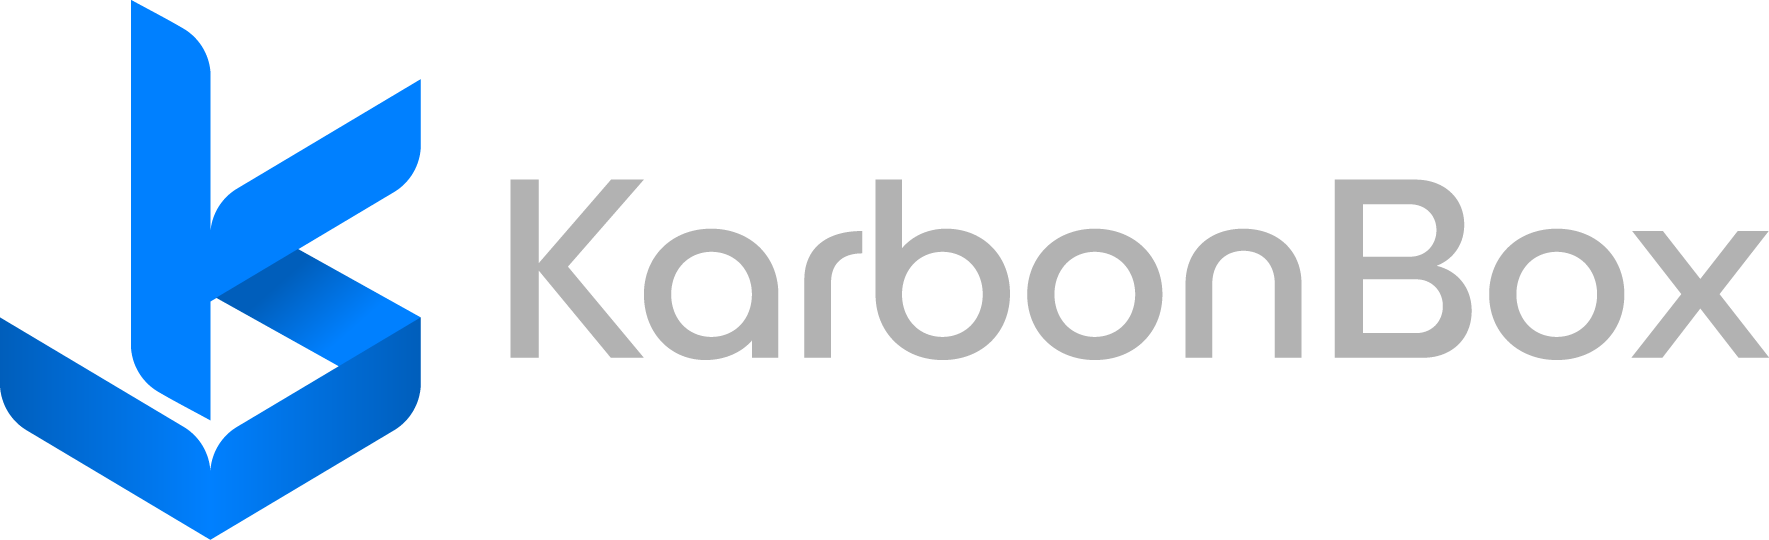 KarbonBox